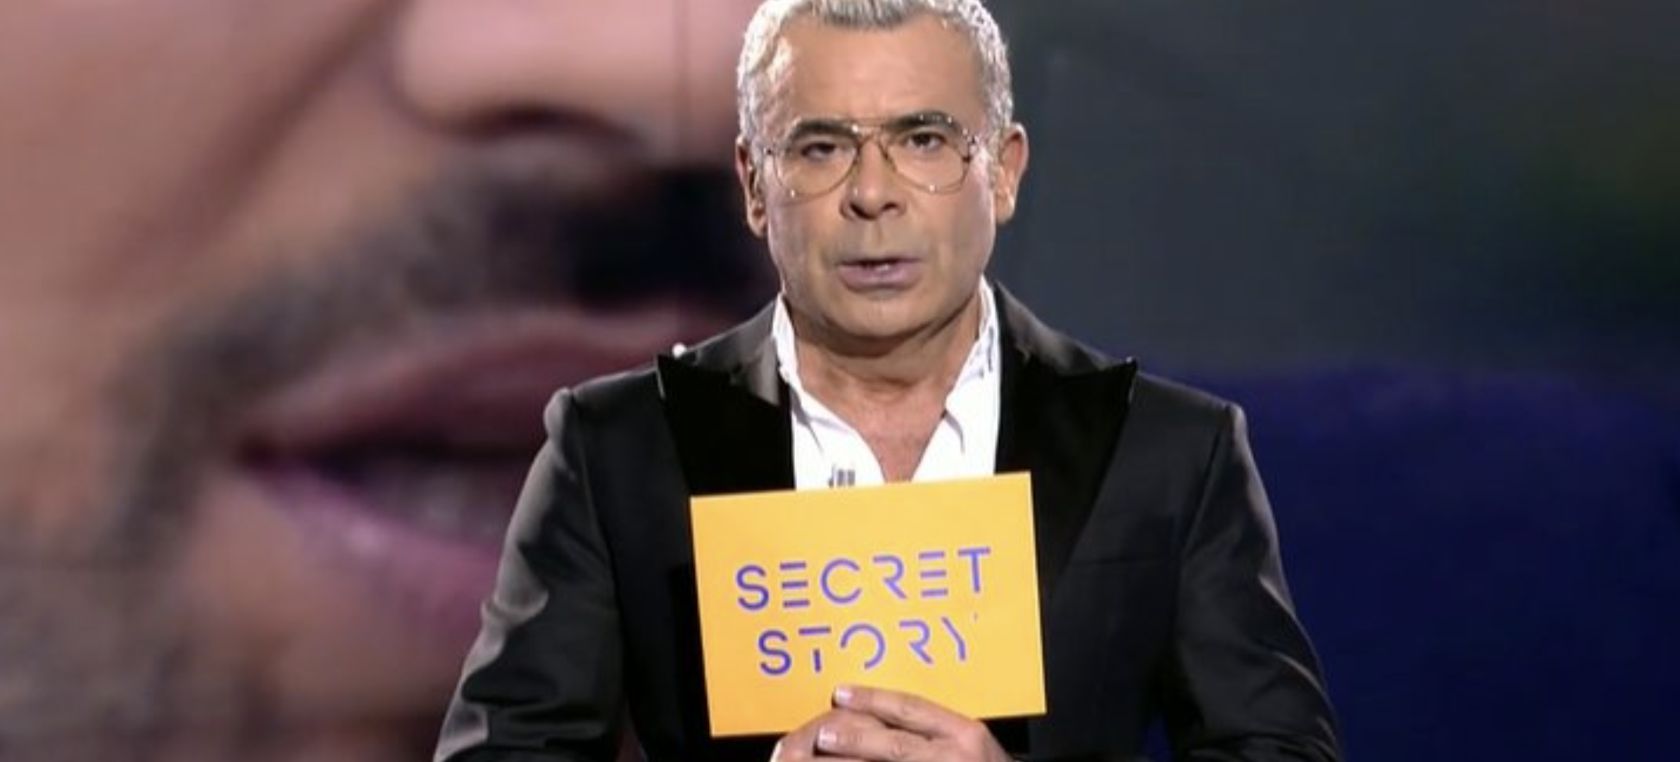 ‘Secret Story’: Jorge Javier echa una bronca monumental a los concursantes por intentar boicotear el programa